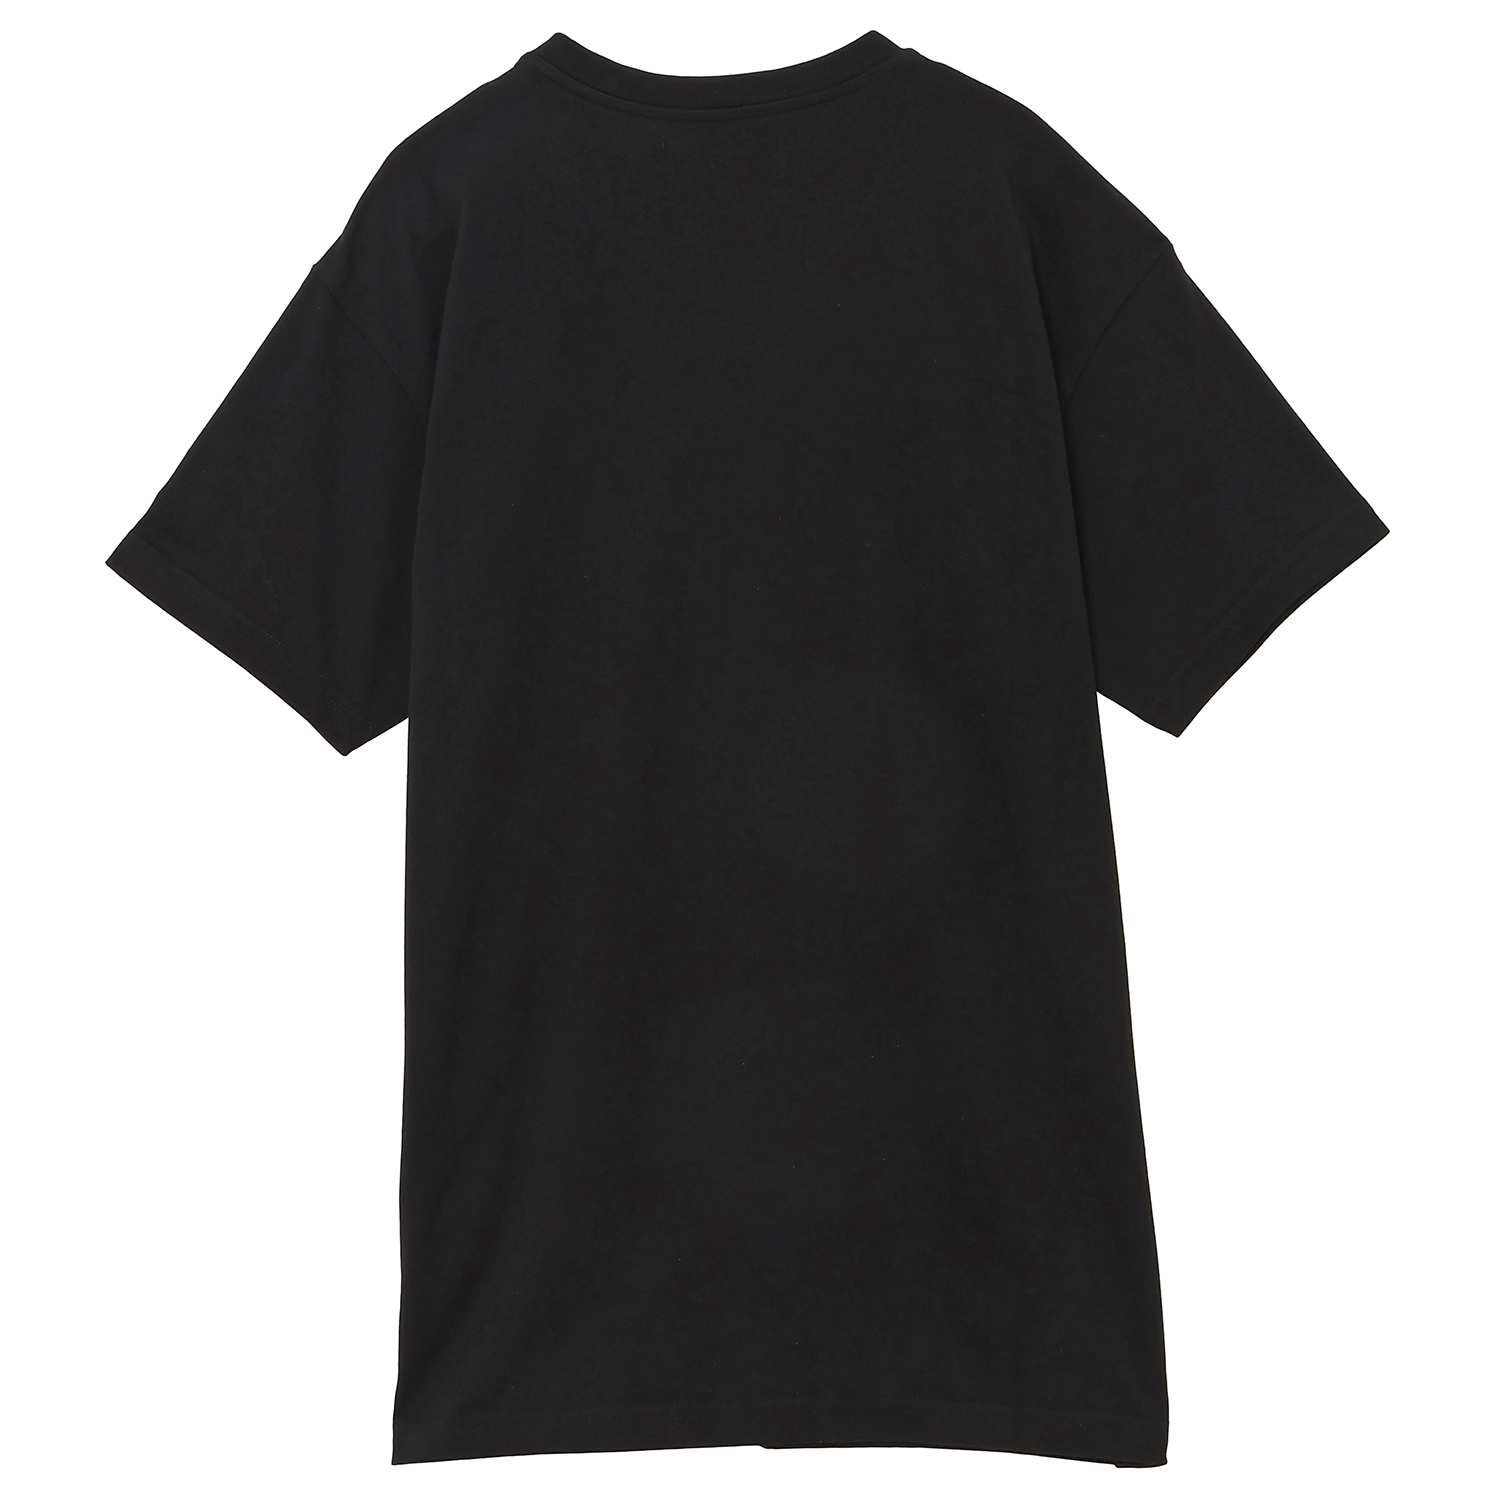 ヴィヴィアンウエストウッド Vivienne Westwood 3G010013 J001M N401 L オーブ刺繍 クルーネック 半袖 Tシャツ Lサイズ ブラック メンズ レディース ユニセックス MULTICOLOR ORB CLASSIC 2